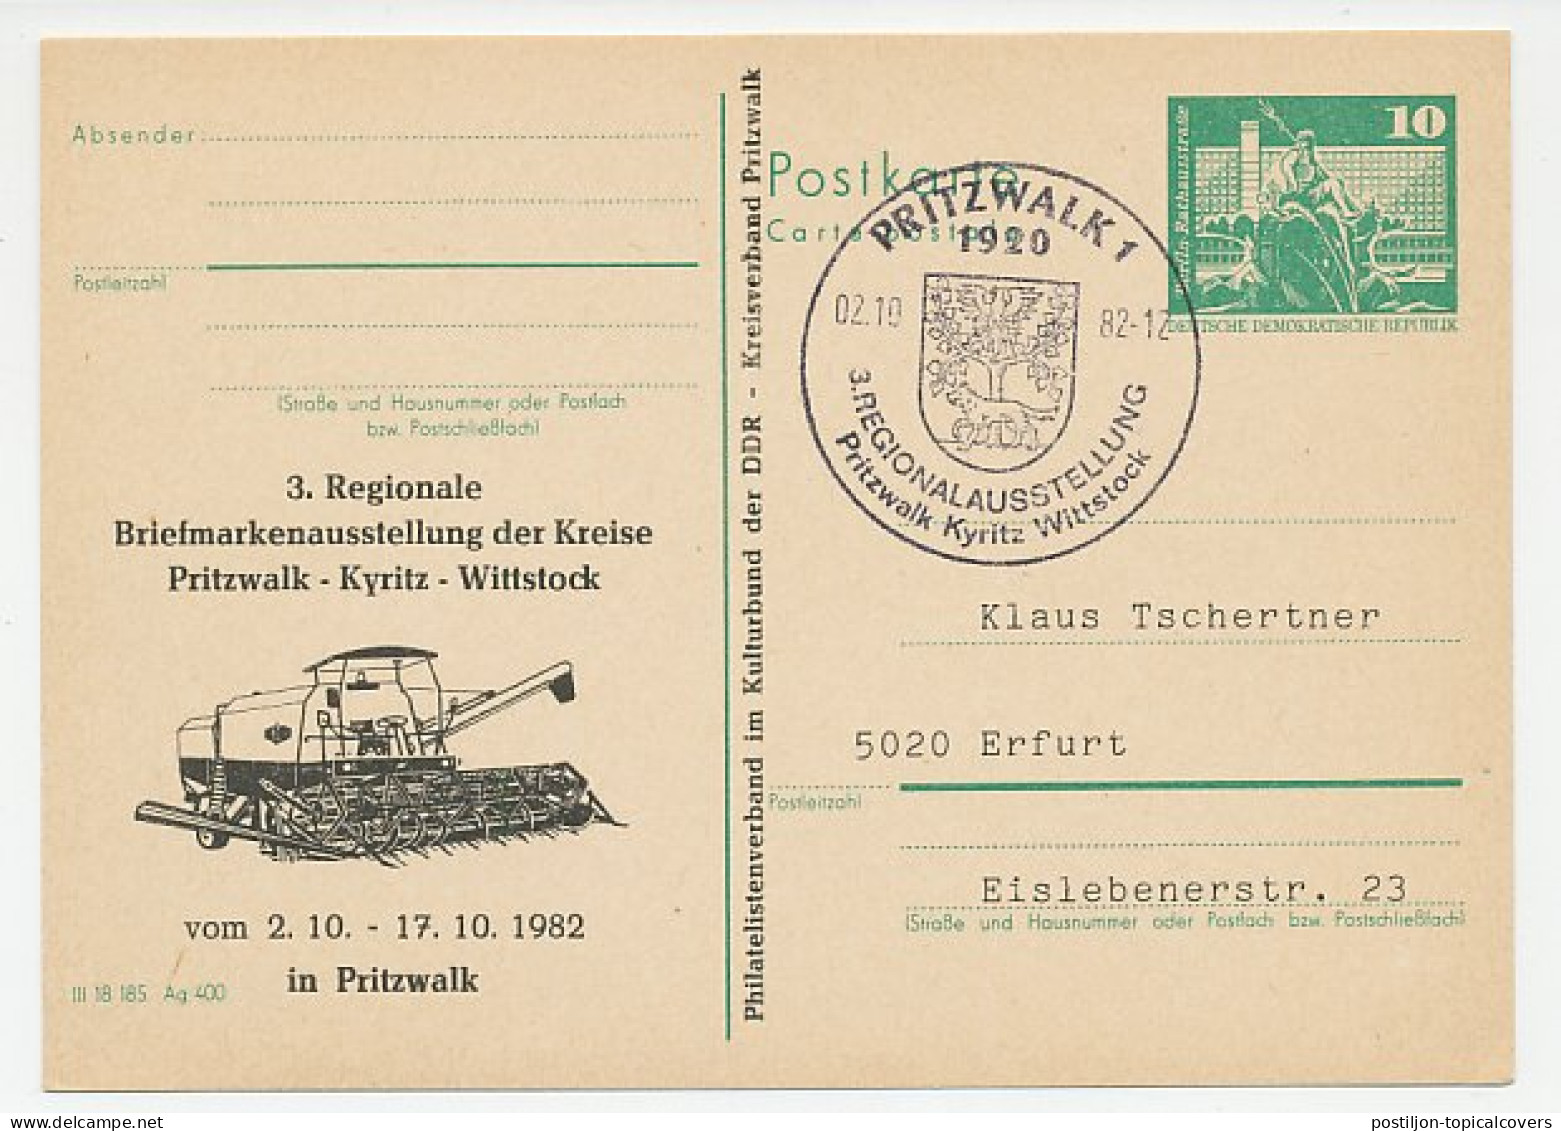 Postal Stationery / Postmark Germany / DDR 1982 Combine Harvester - Agricoltura